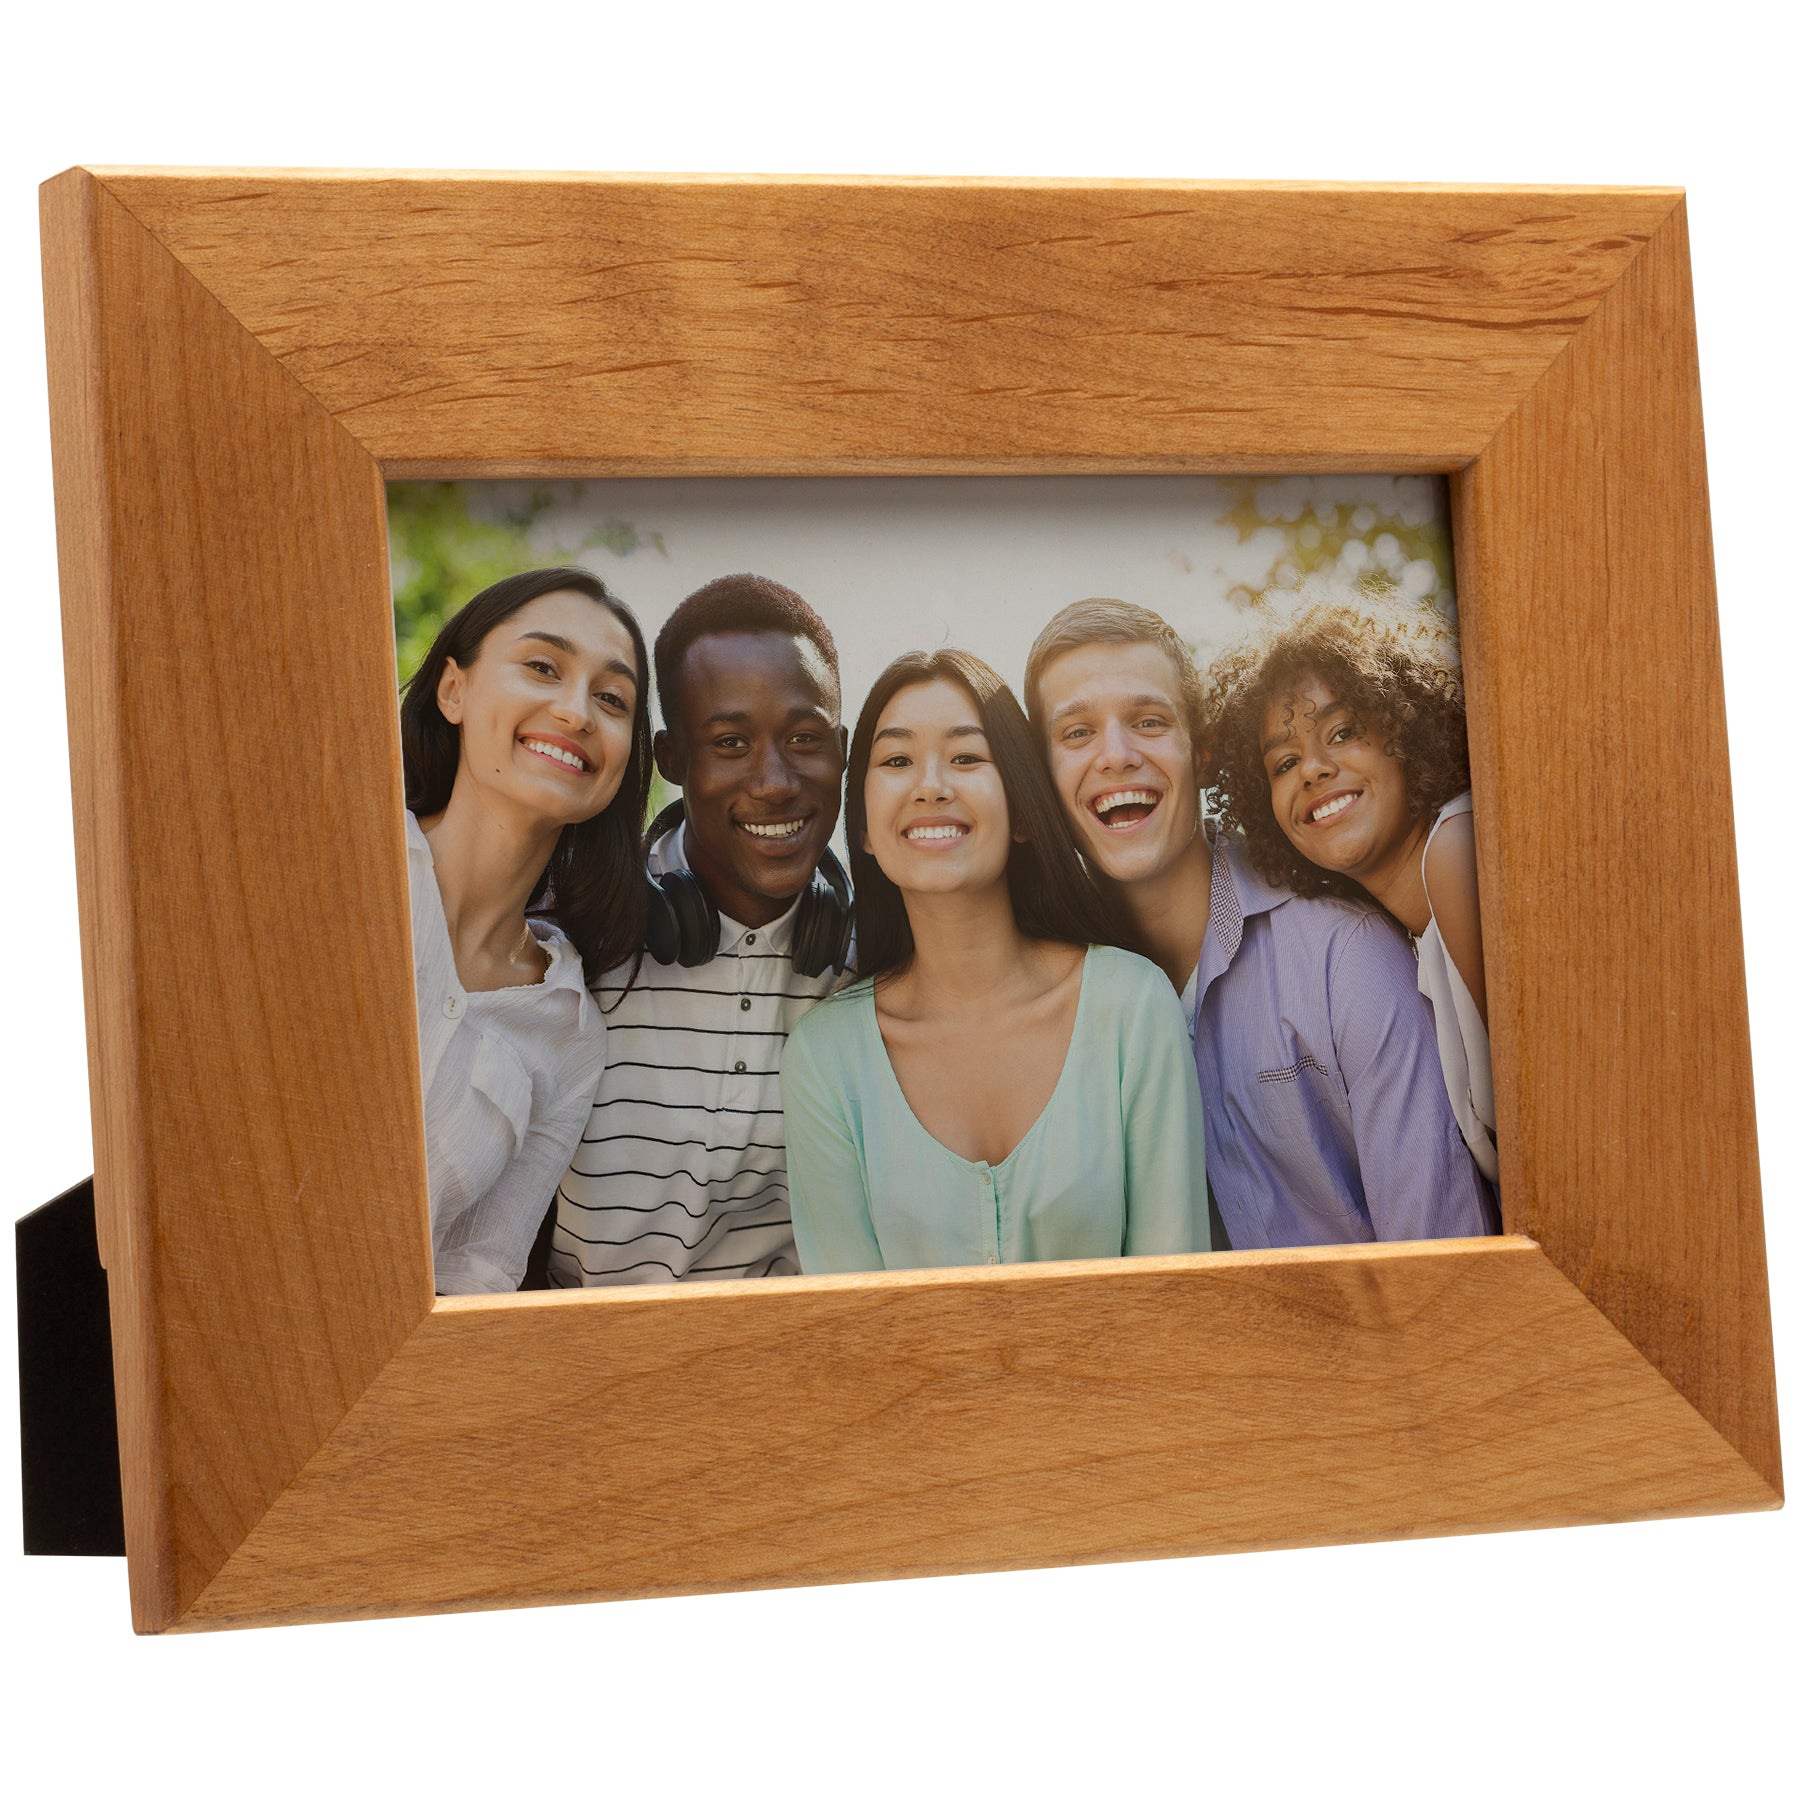 4" x 6" Alder Wood Picture Frame